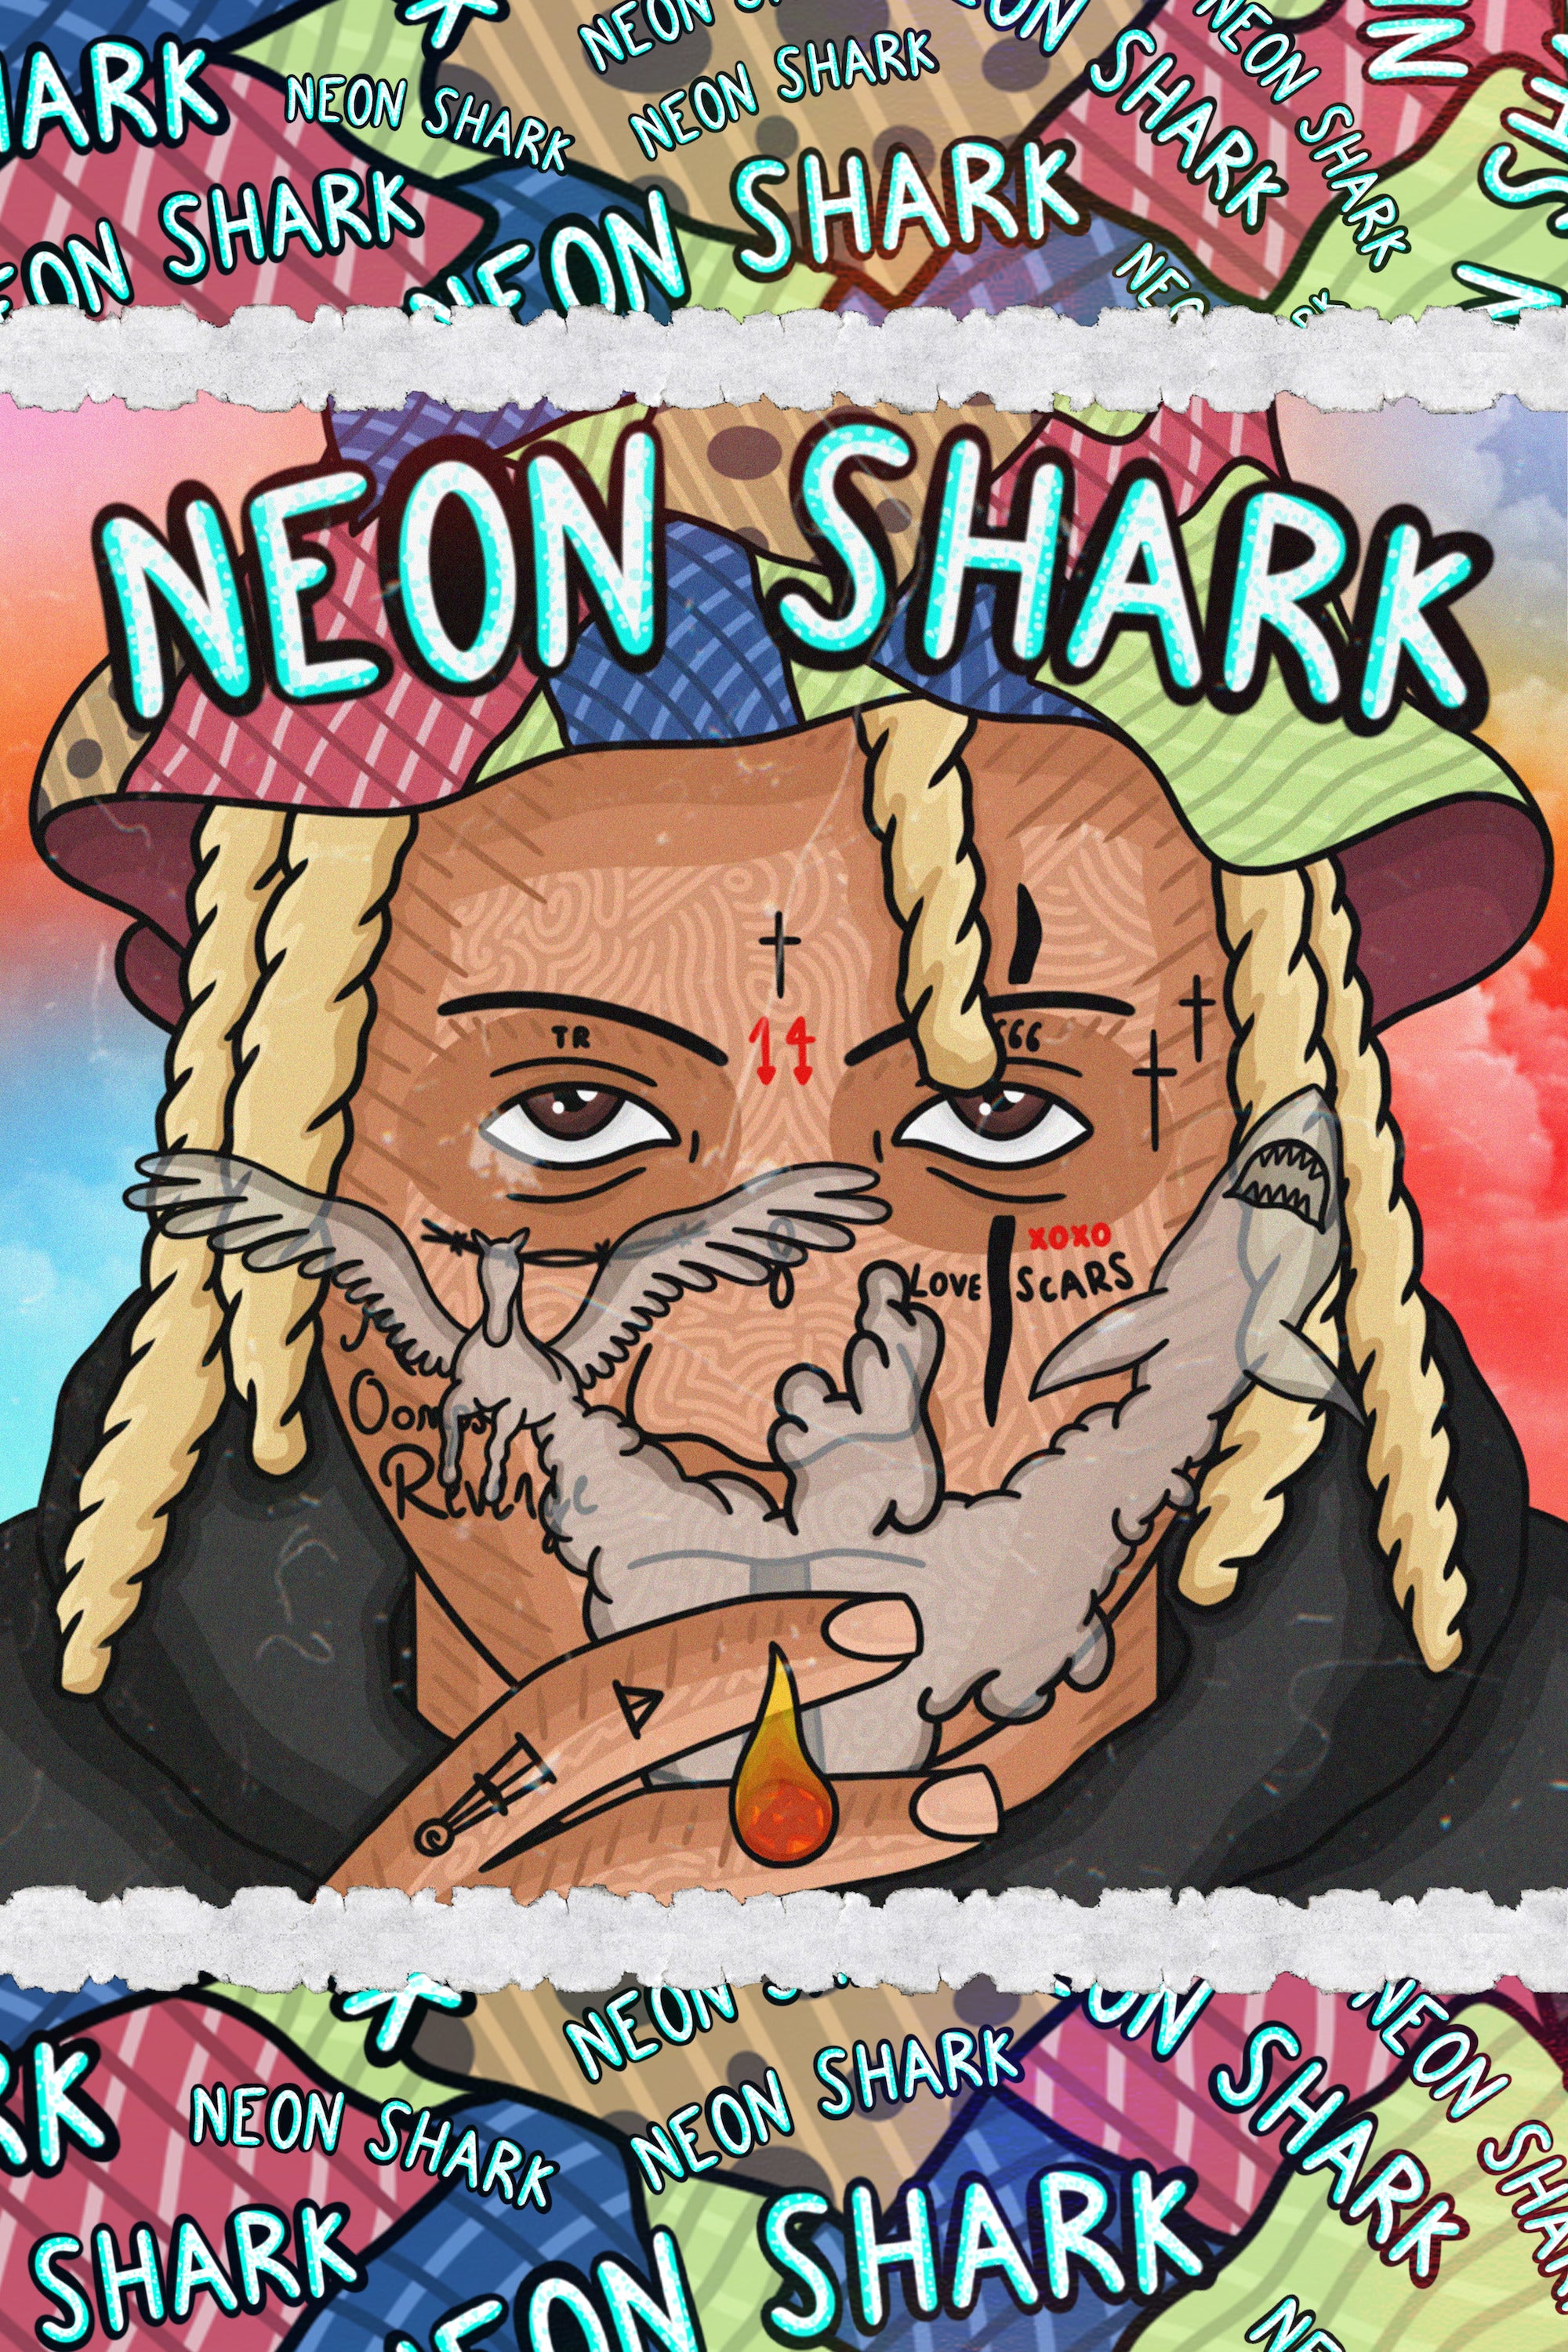 Trippie Redd 'Neon Shark' Poster